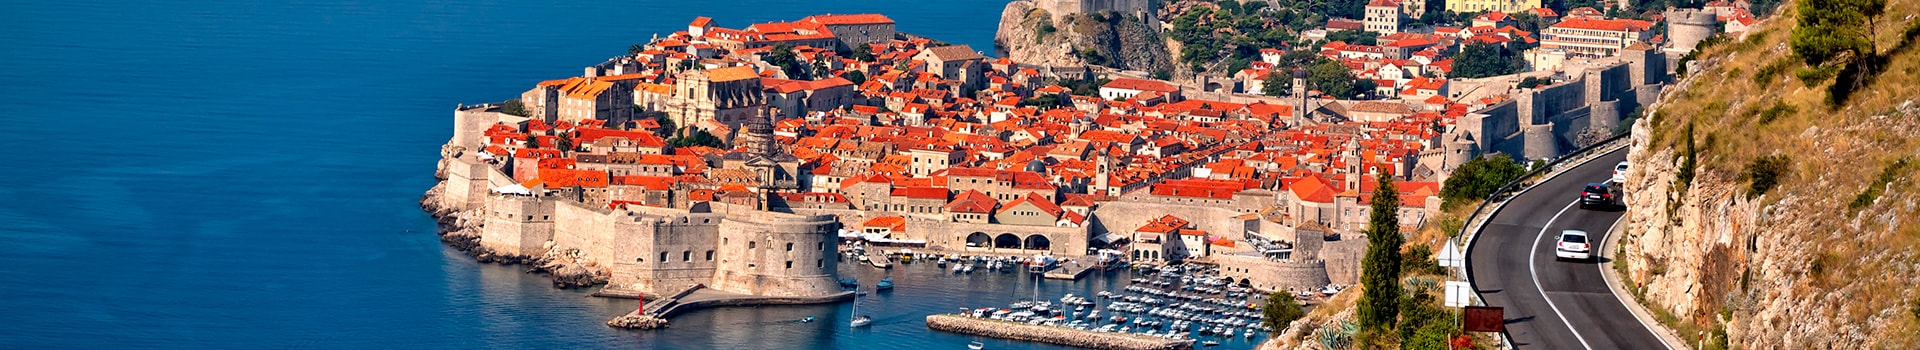 Faro - Dubrovnik